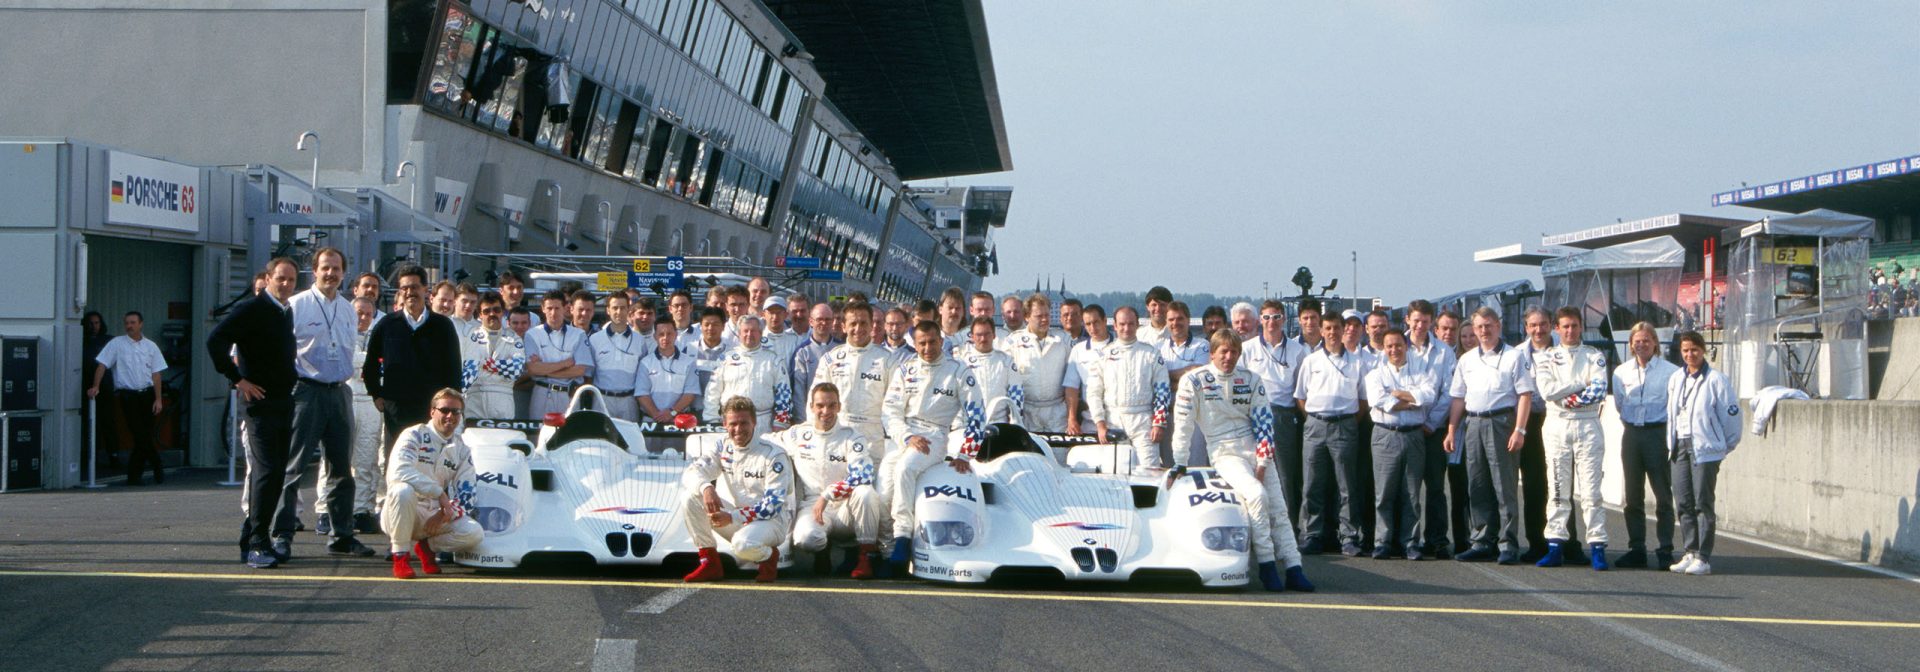 Gesamtsieg bei den 24 Stunden von Le Mans mit dem BMW V12 LMR. Joachim Winkelhock, Pierluigi Martini und Yannick Dalmas fuhren schneller als alle anderen, Teamchef war der österreichische Ex-Formel-1-Fahrer Gerhard Berger. Hier das offizielle Abschlussfoto des gesamten Teams.